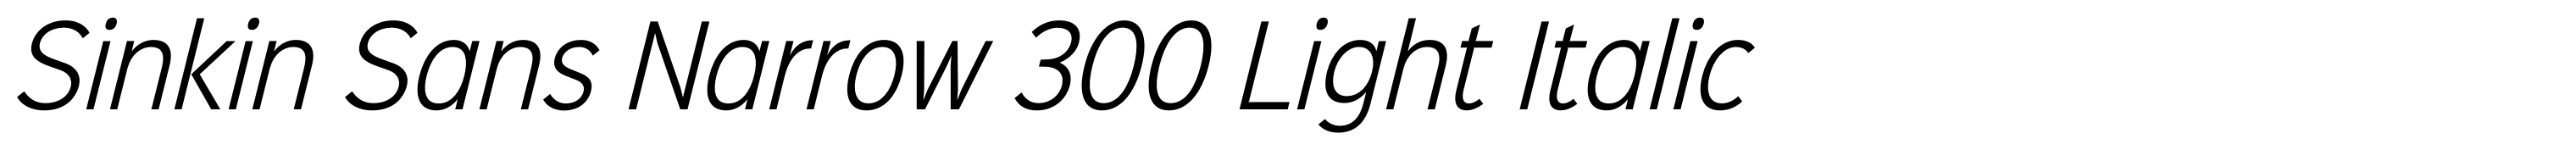 Sinkin Sans Narrow 300 Light Italic